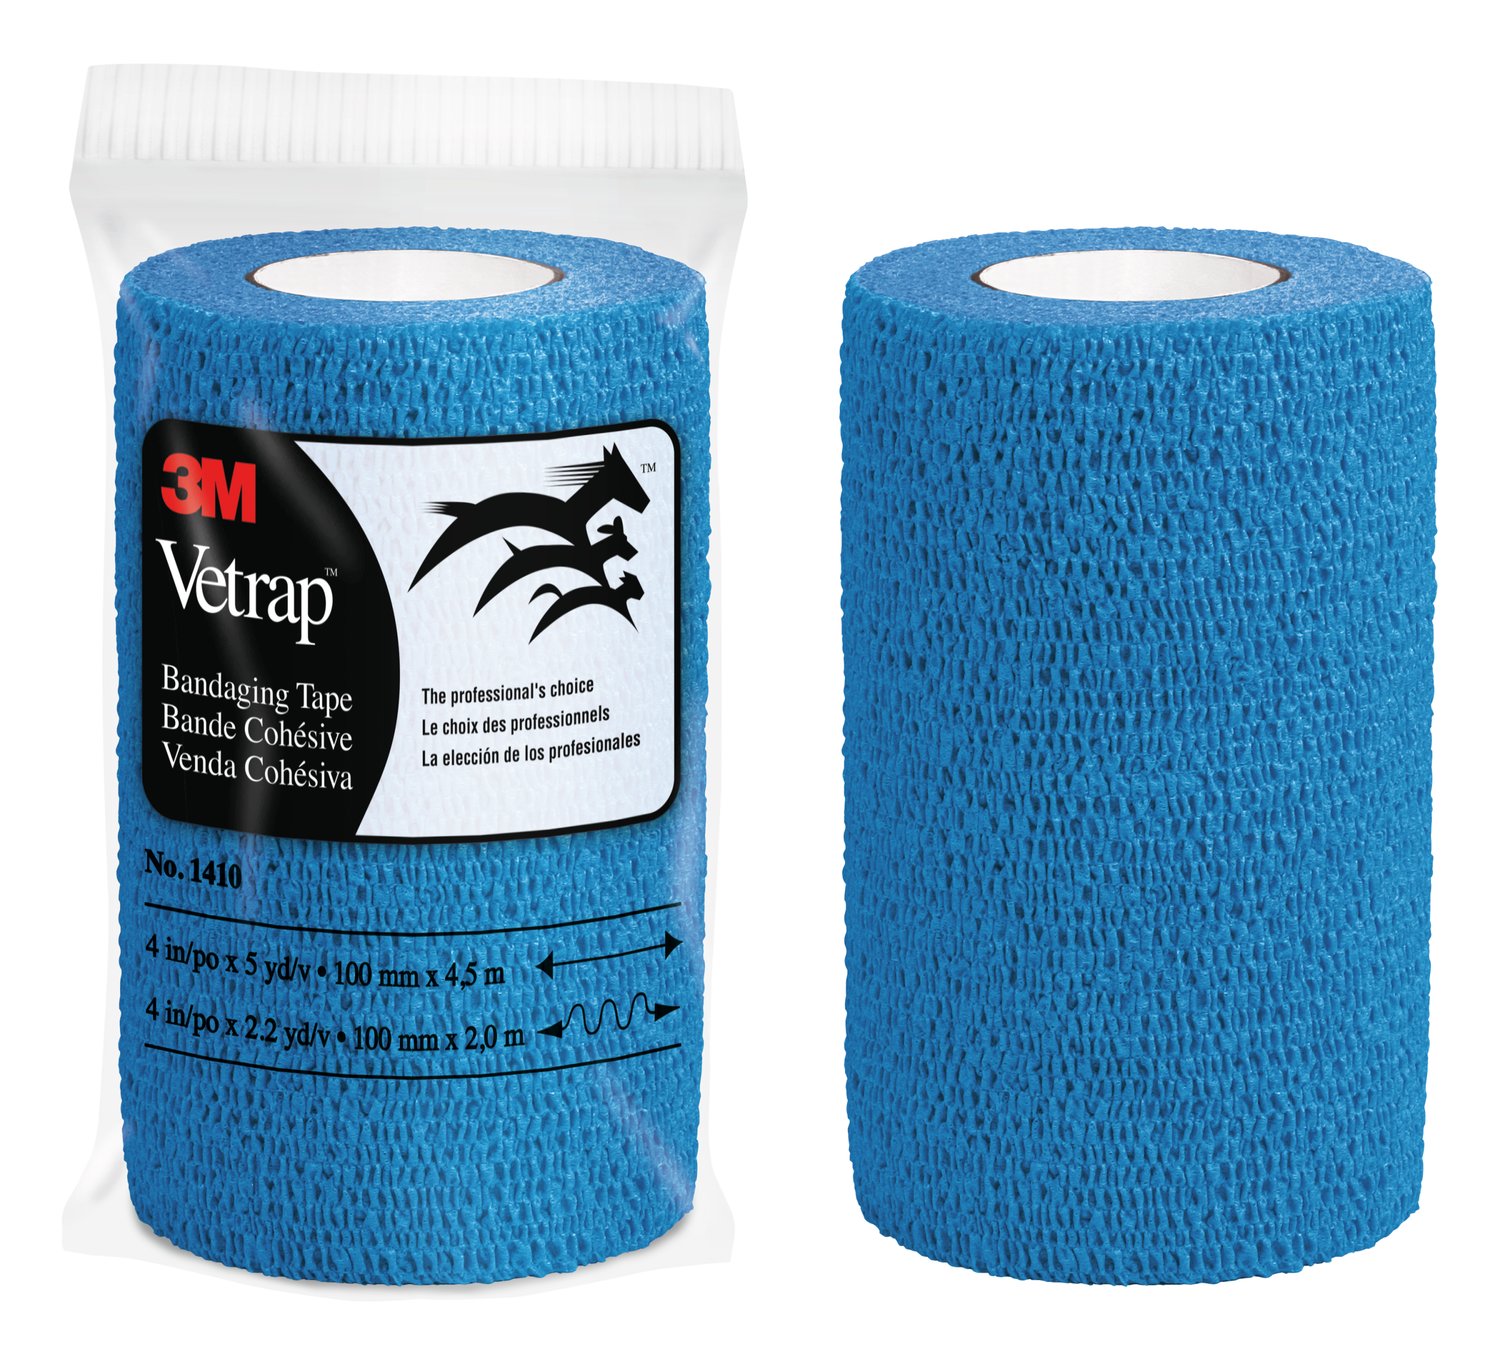 7100295322 - 3M Vetrap Bandaging Tape 1410B-18, Blue, 4 in x 5 yd (100 mm x 4.5 m), 18 Rolls/Case